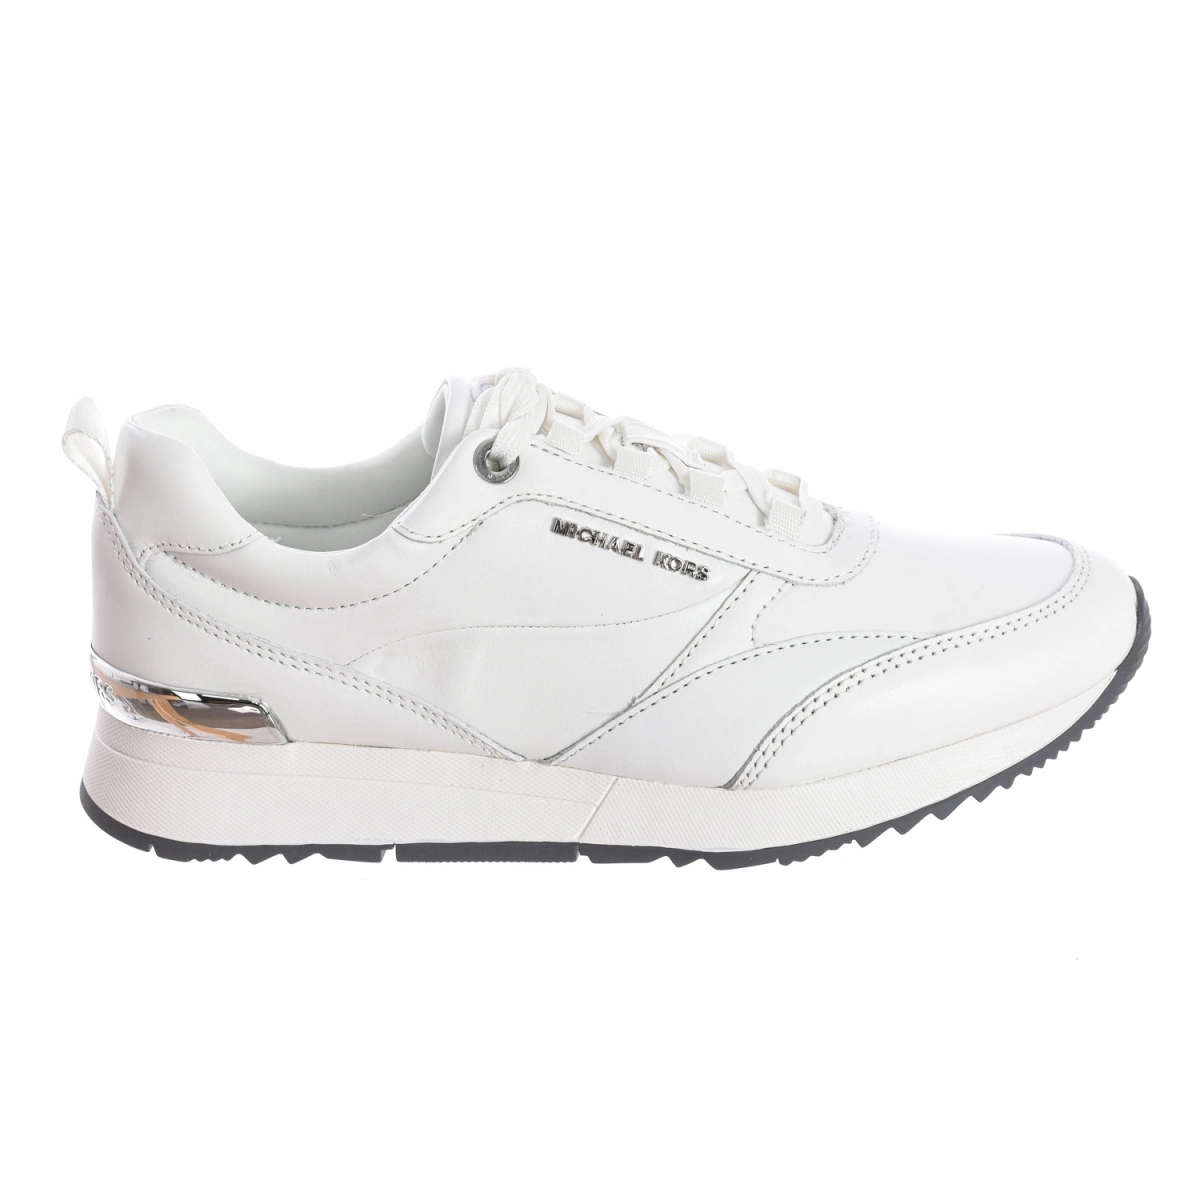 Zapatilla Sneaker Allie Stride Michael Kors T2ALFS3L mujer Talla: 40.5 Color: Blanco T2ALFS3L-OPTIC-WHITE.40.5